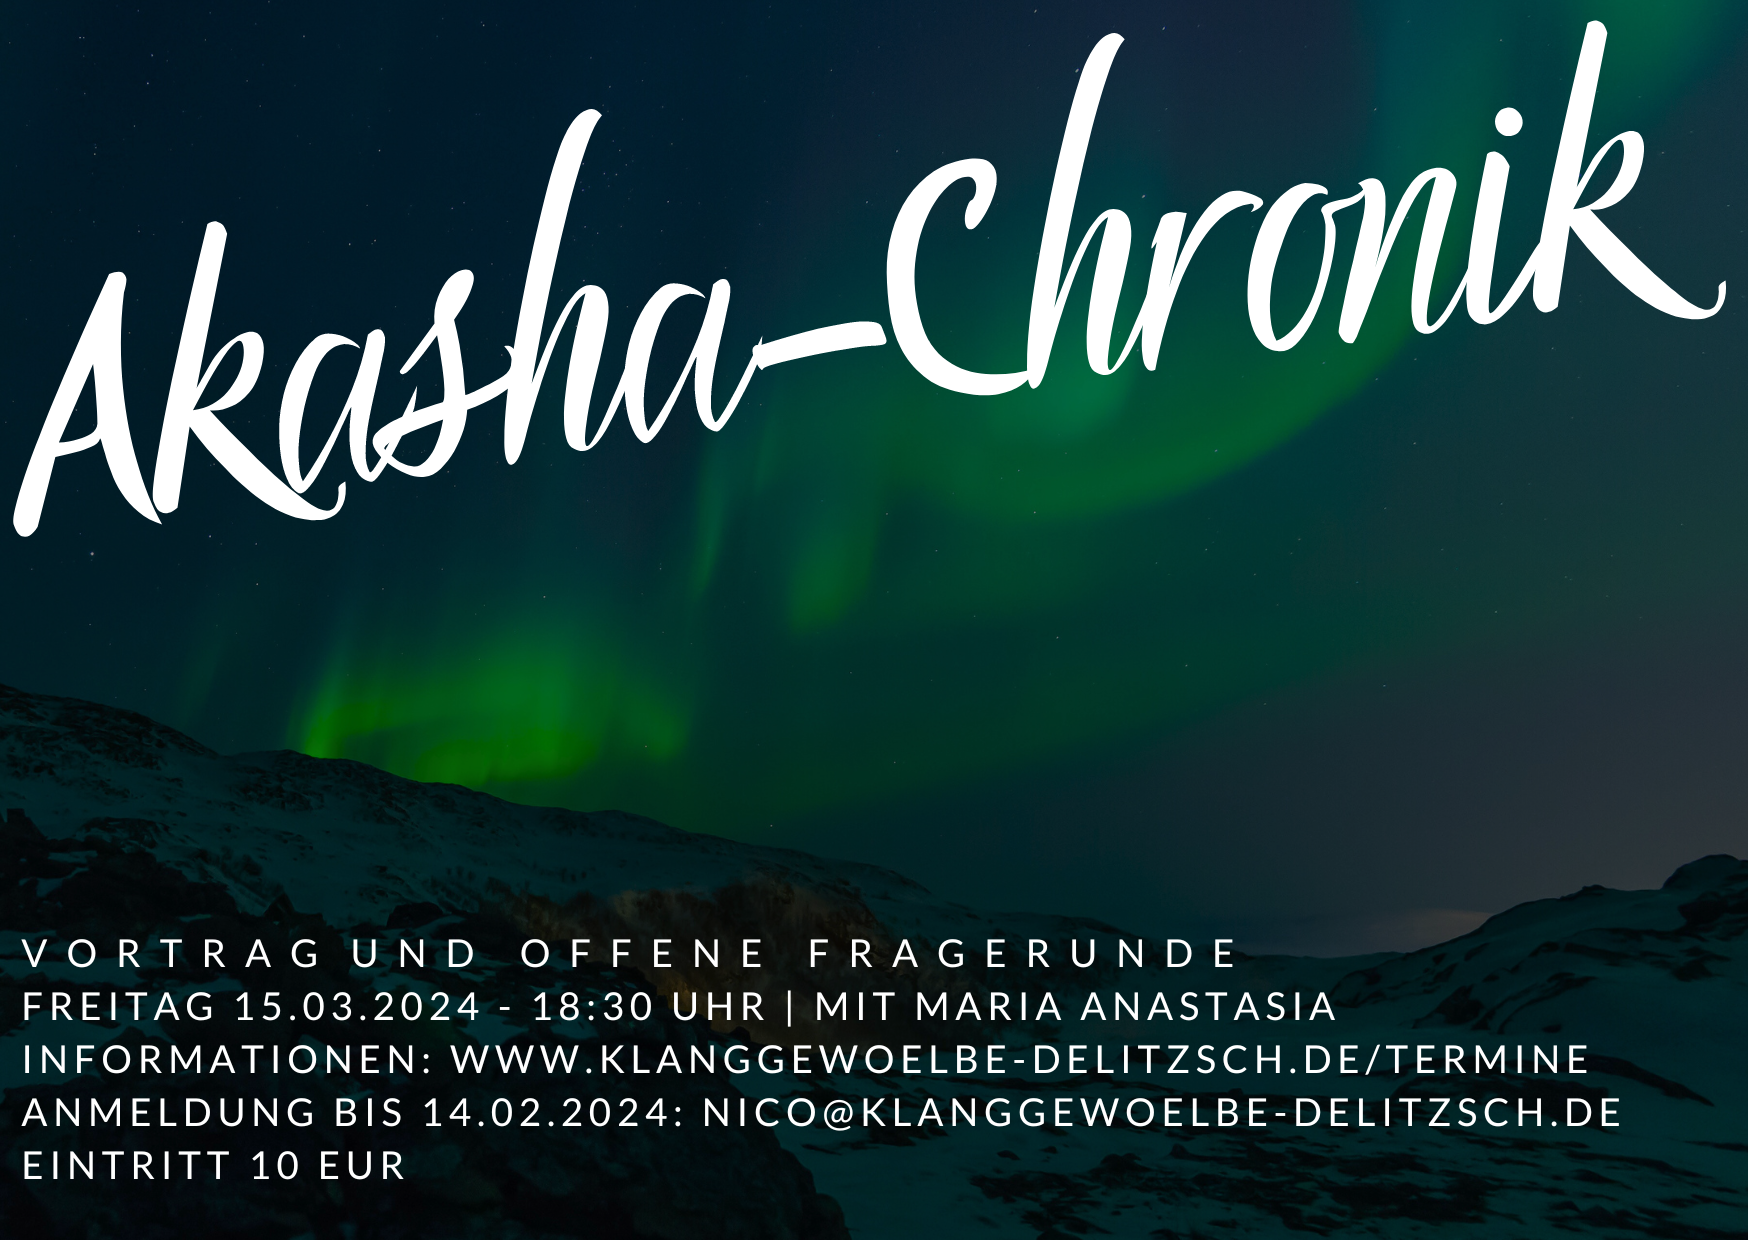 You are currently viewing Akasha Chronik – Vortrag und offene Fragerunde